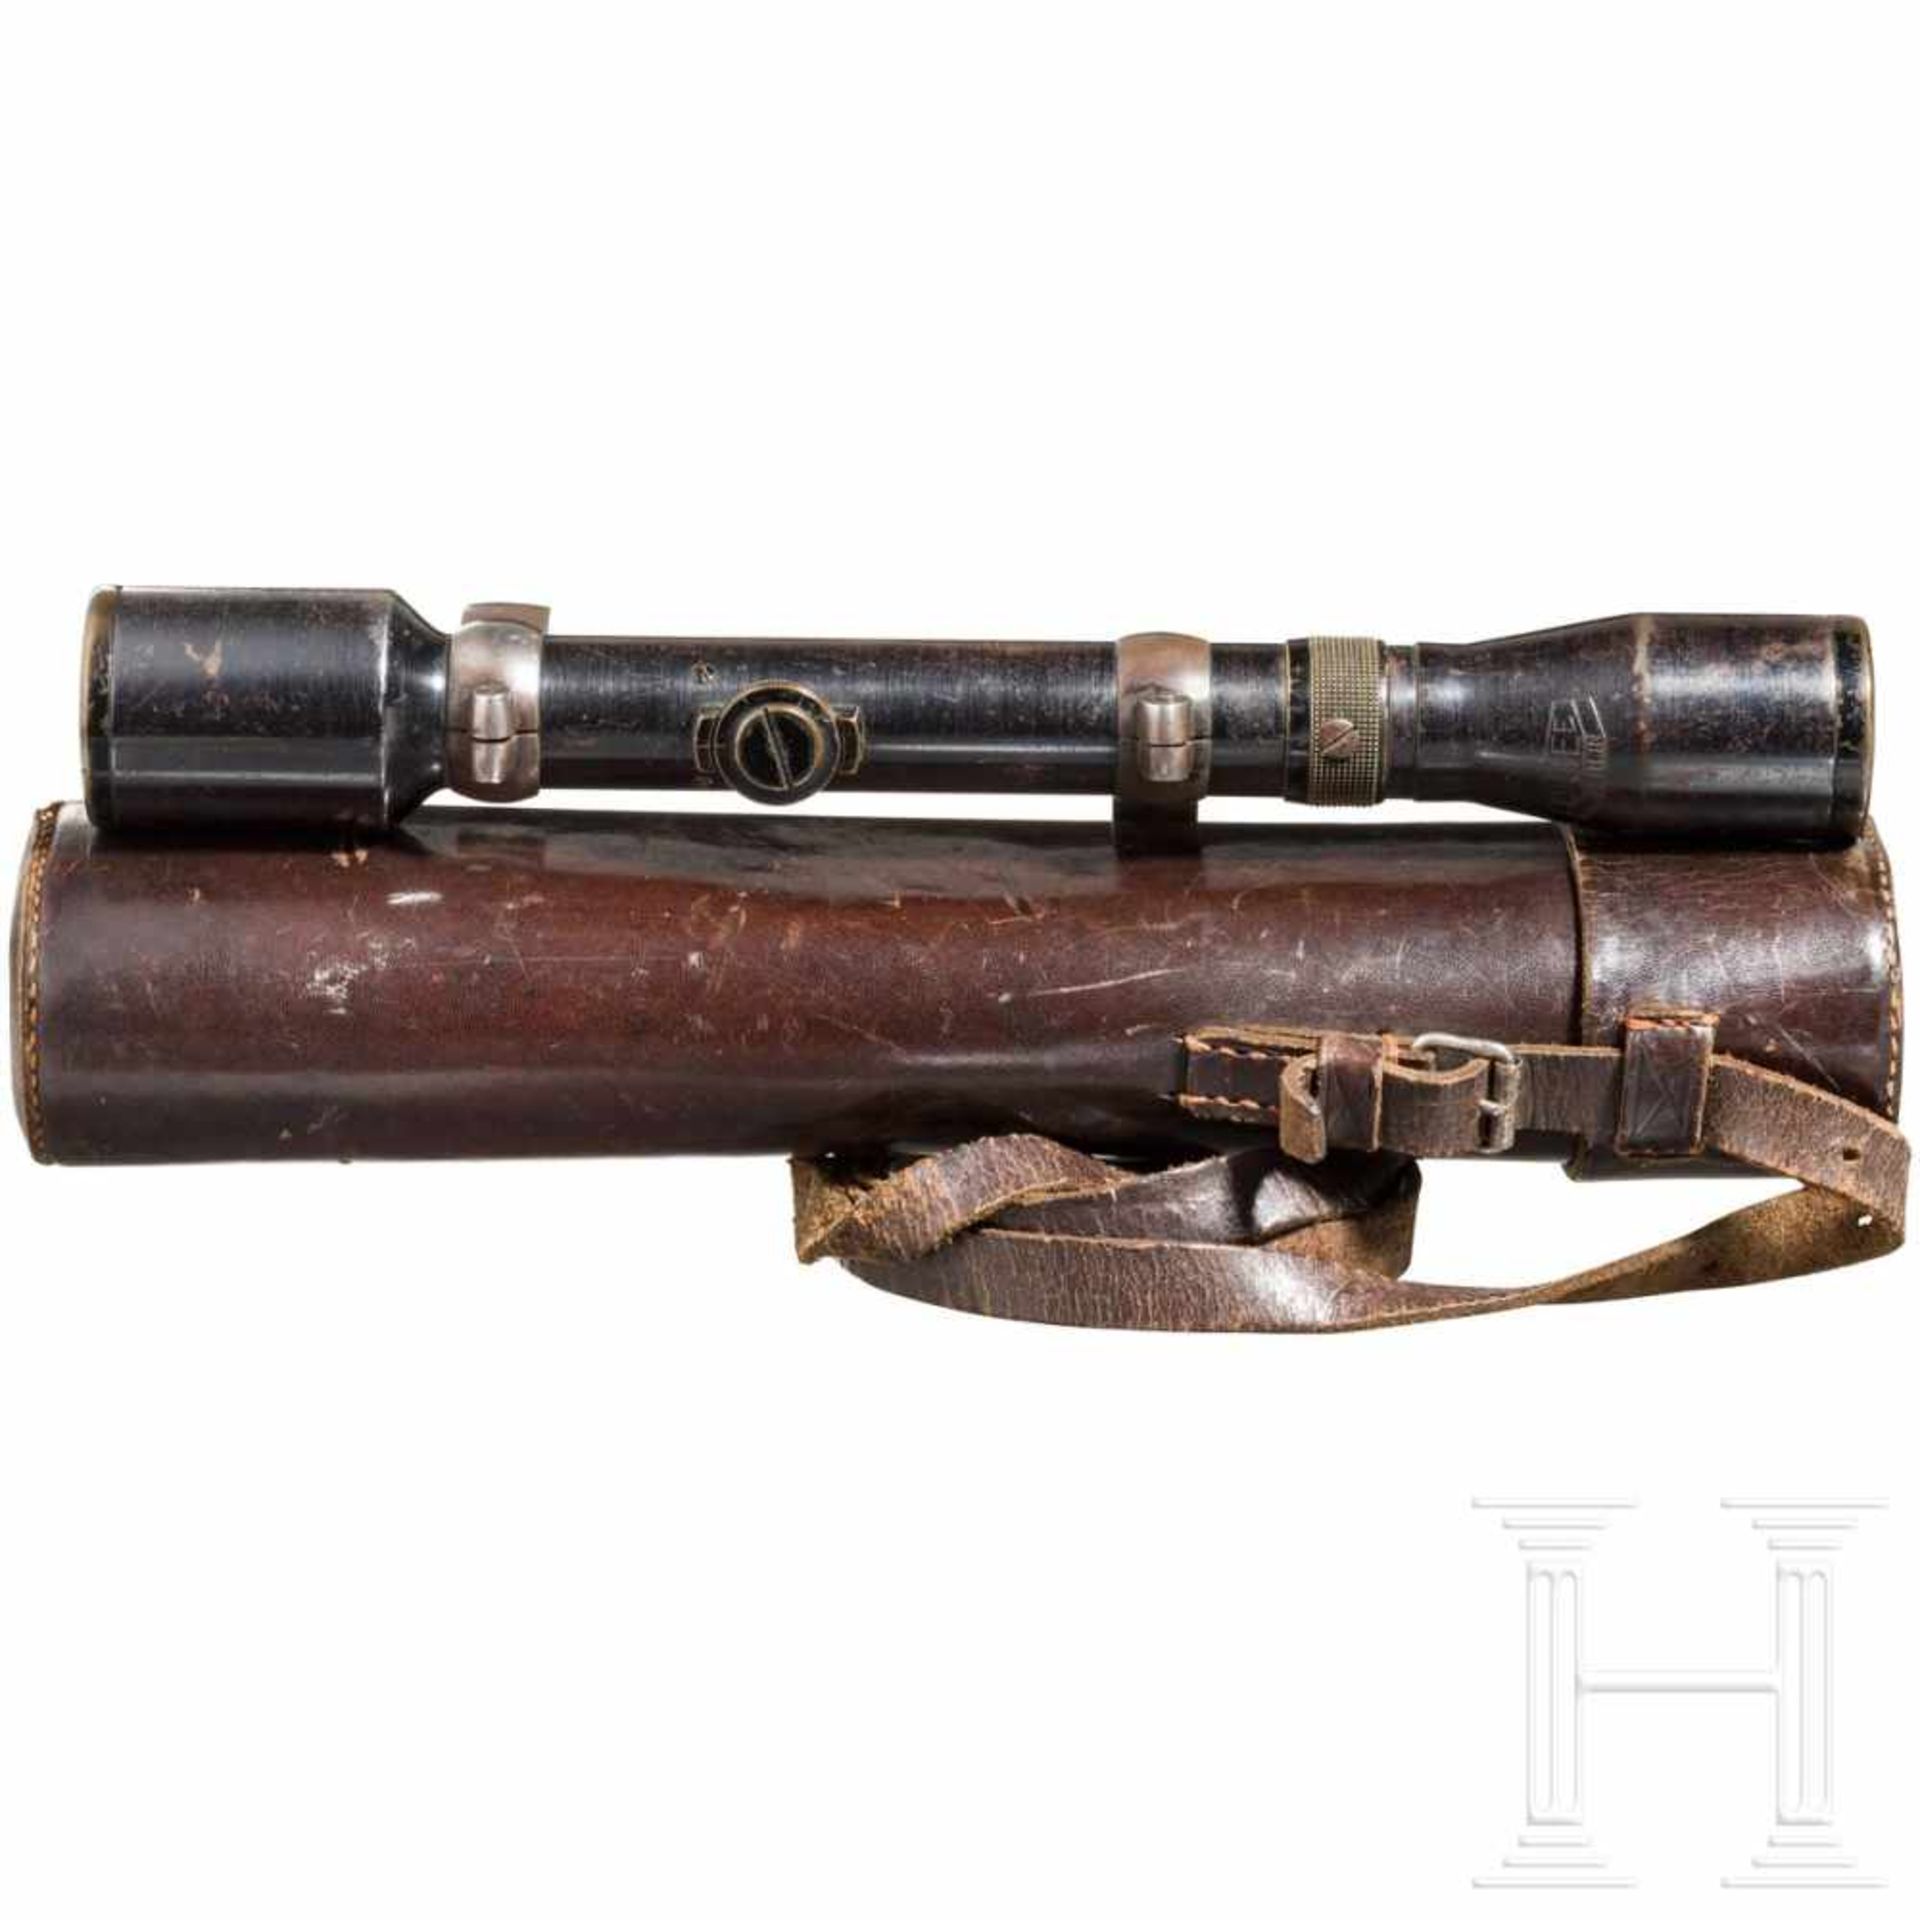 Rifle scope OIGEE Luxor hell 4 x with quiverStahl, brüniert (berieben), Herstellerbezeichnung, - Bild 5 aus 8